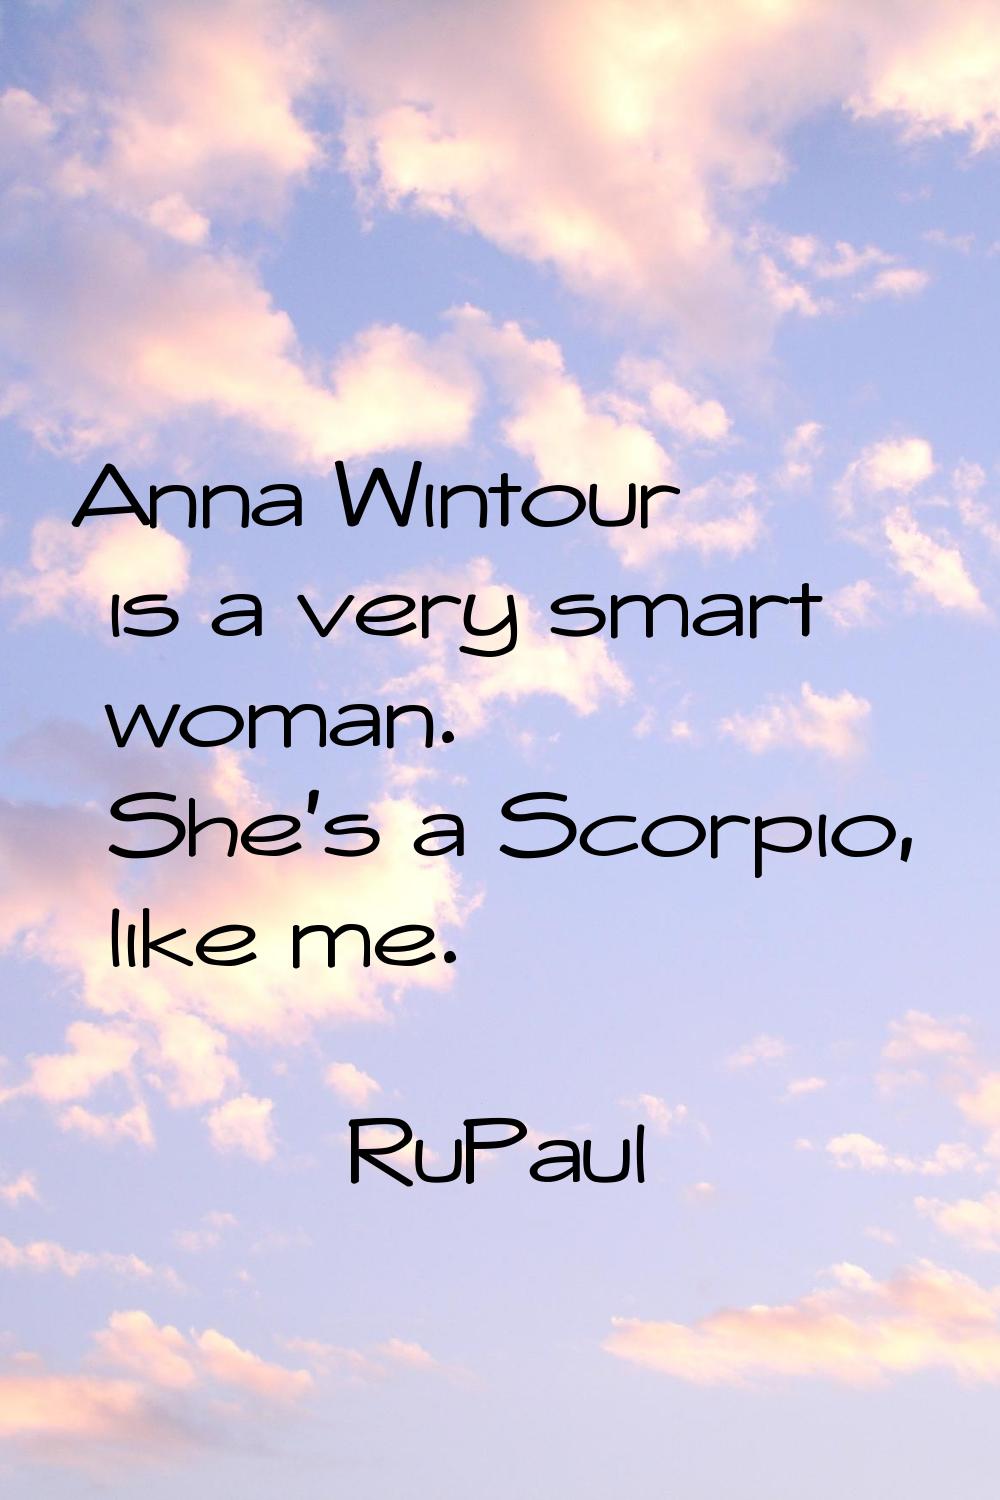 Anna Wintour is a very smart woman. She's a Scorpio, like me.